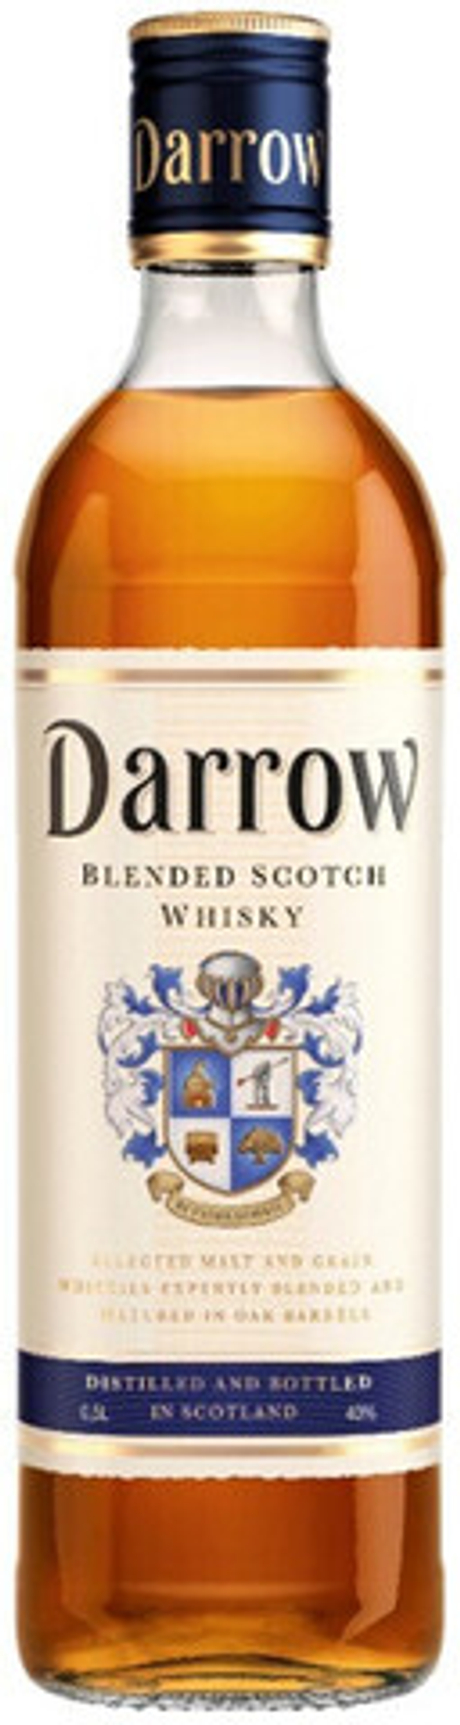 Darrow цена 0.7. Виски Дэрроу шотландский купажированный 40. Виски де Роу шотландский купажированный. Виски Дэрроу 0.5 шотландский купажированный 40. Виски шотландский купажированный Дэрроу 40% 0,5л.